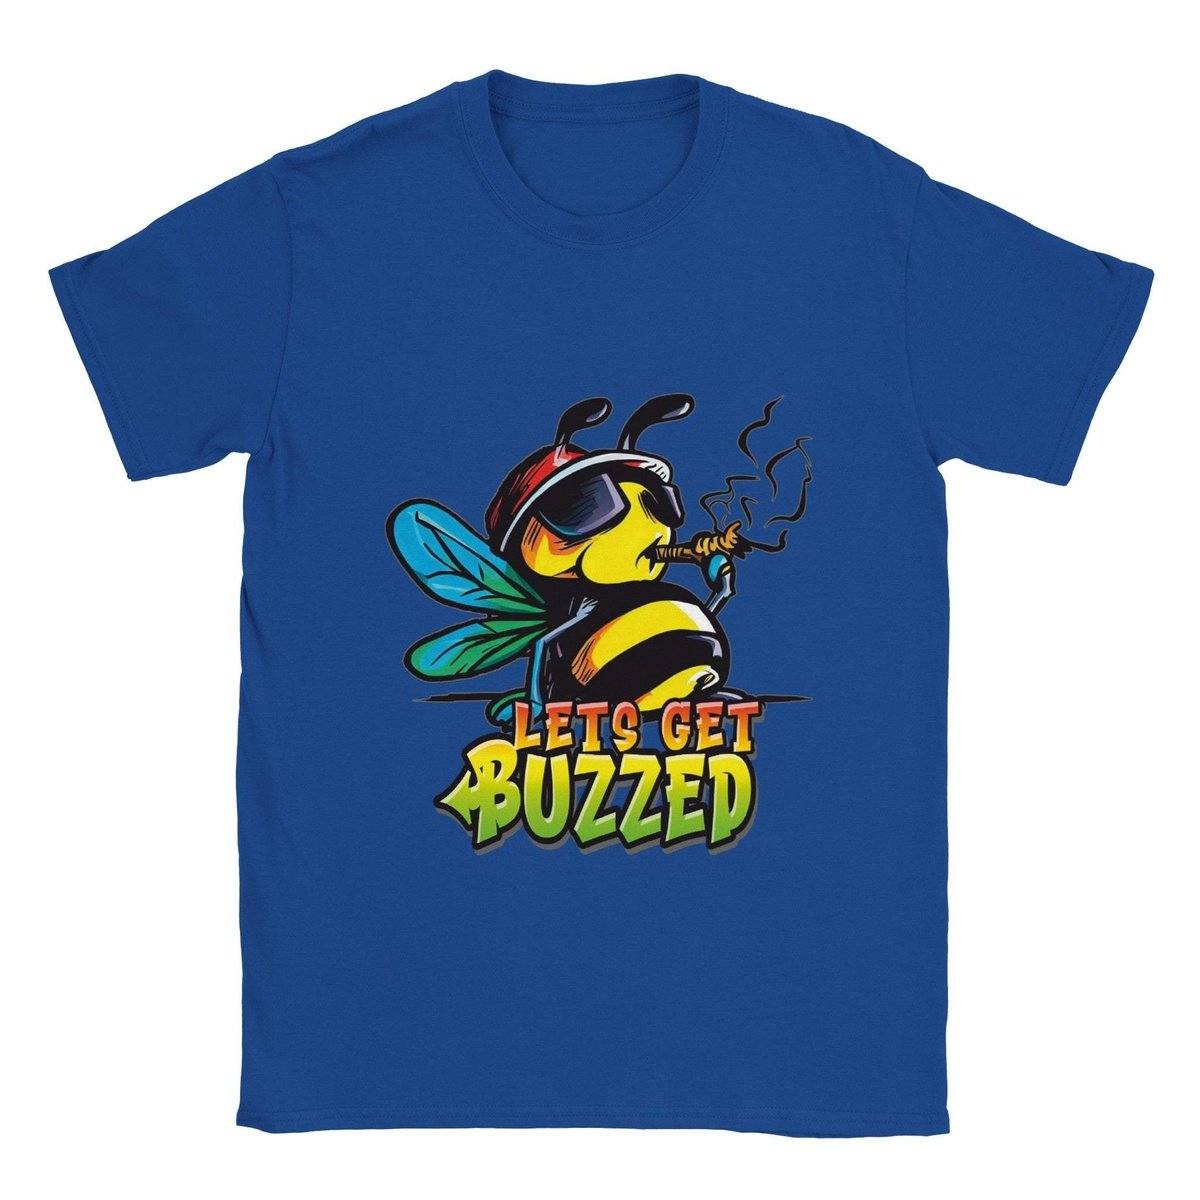 Lets Get Buzzed - Classic Unisex Crewneck T-shirt Australia Online Color Royal / S